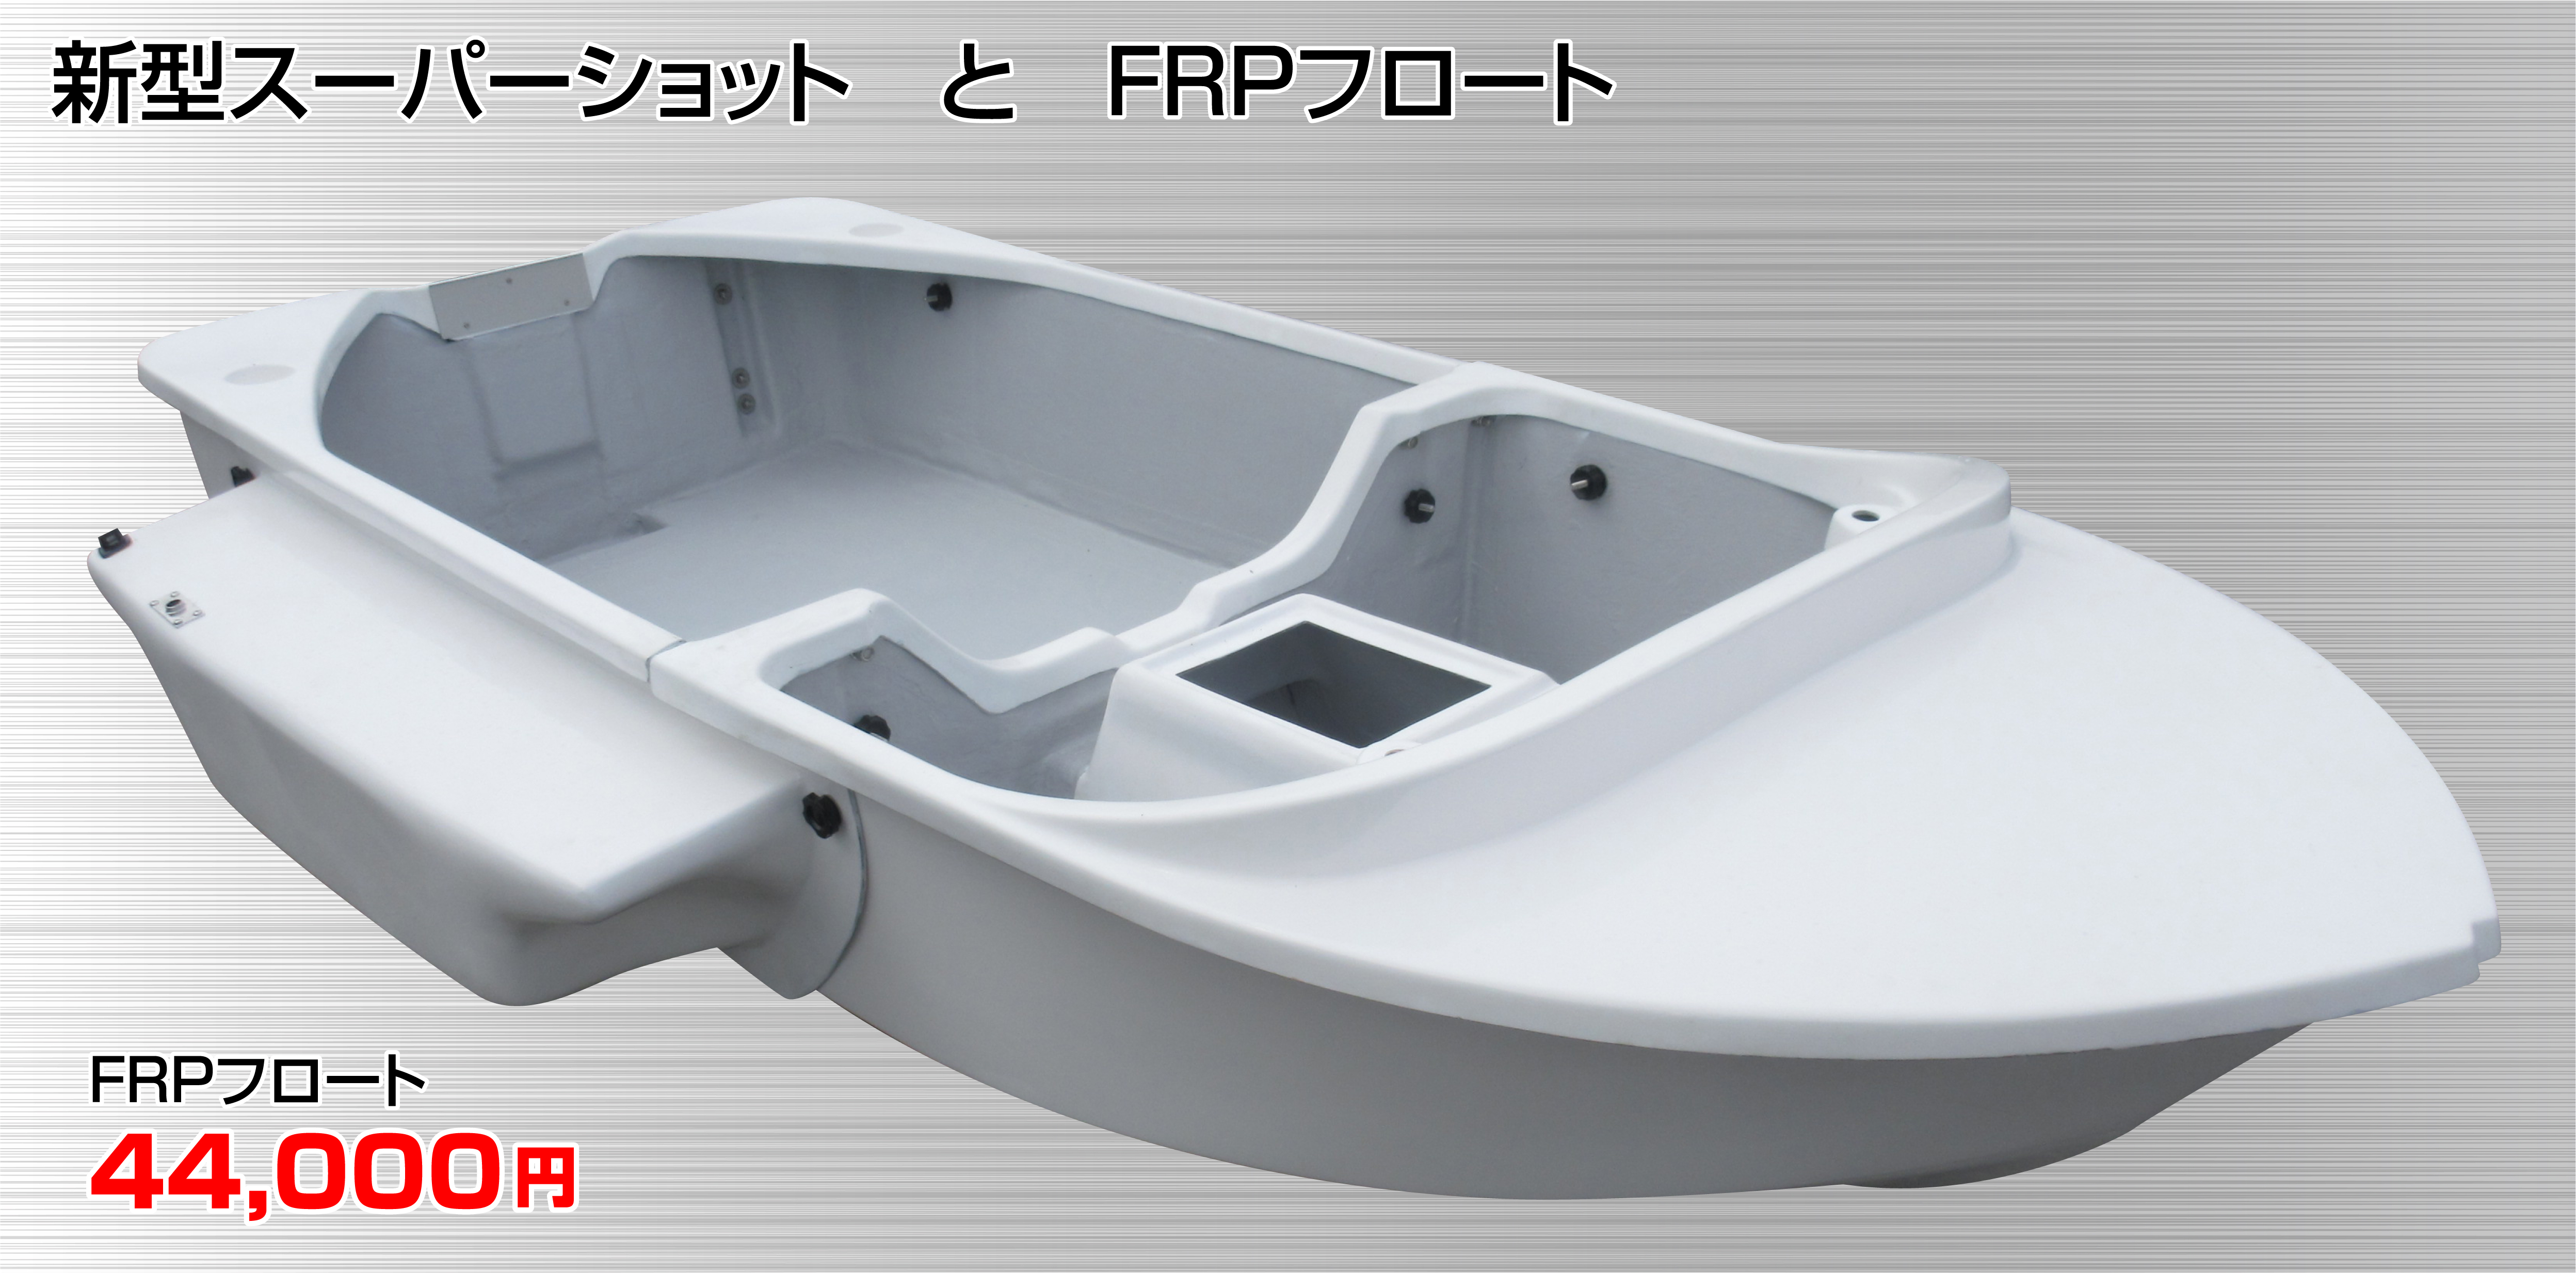 0円 雑誌で紹介された 新品展示艇特価 ポリエチレン製の簡易ボート 直接引取り希望